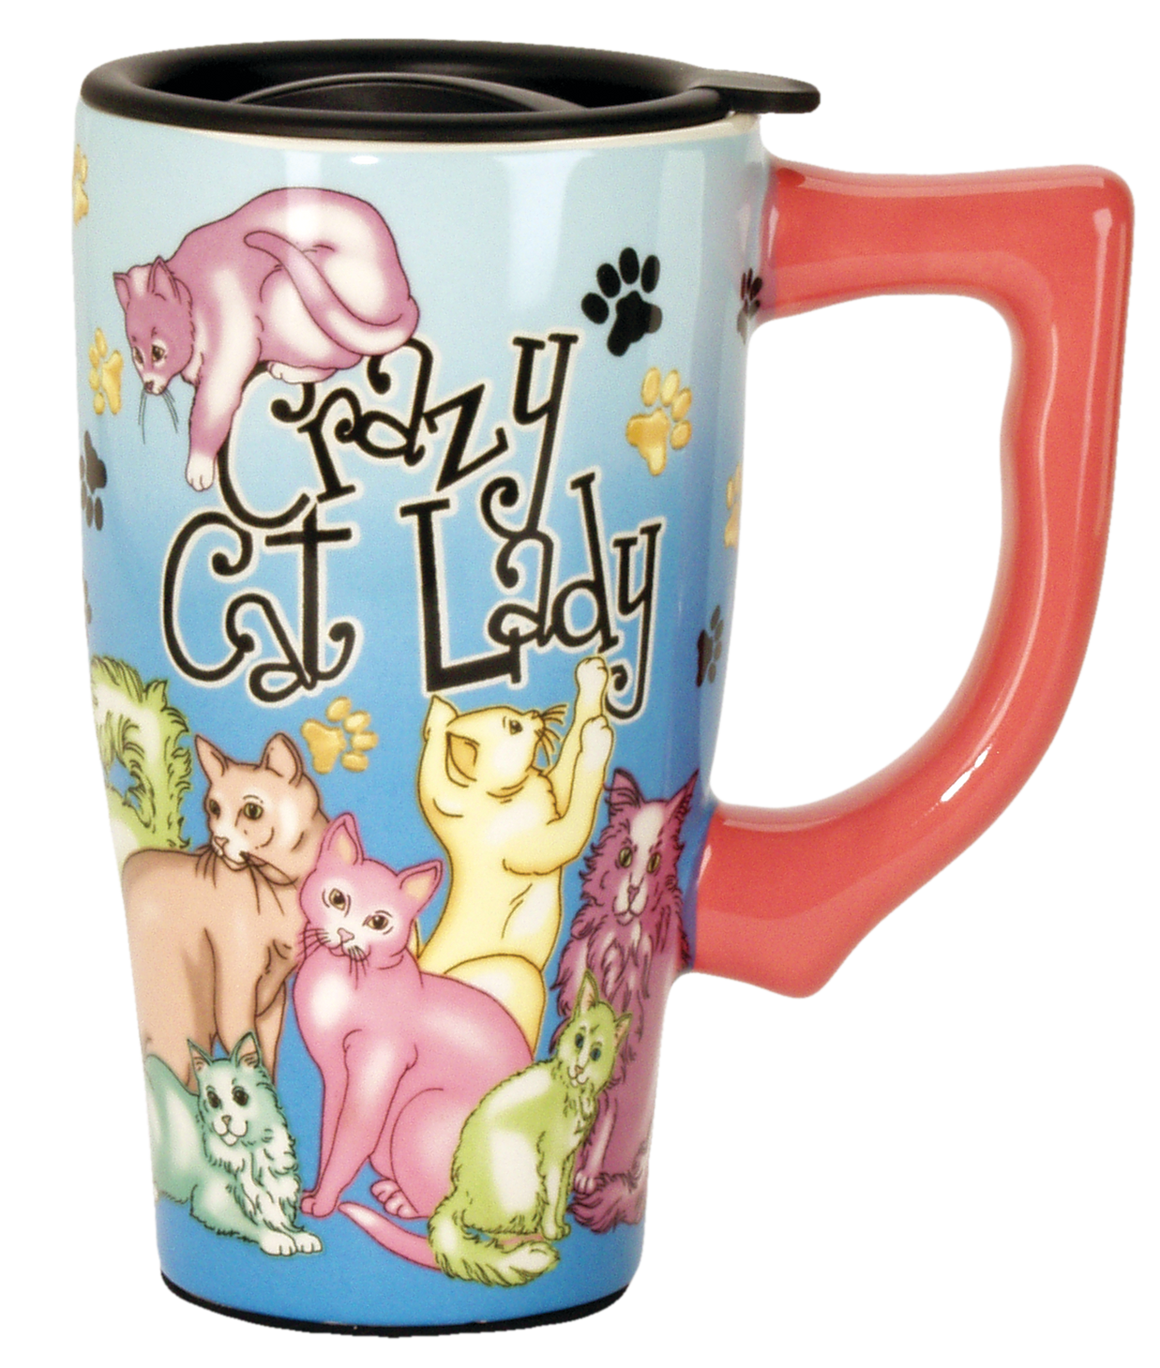 Crazy Cat Lady- Ceramic Travel Mug